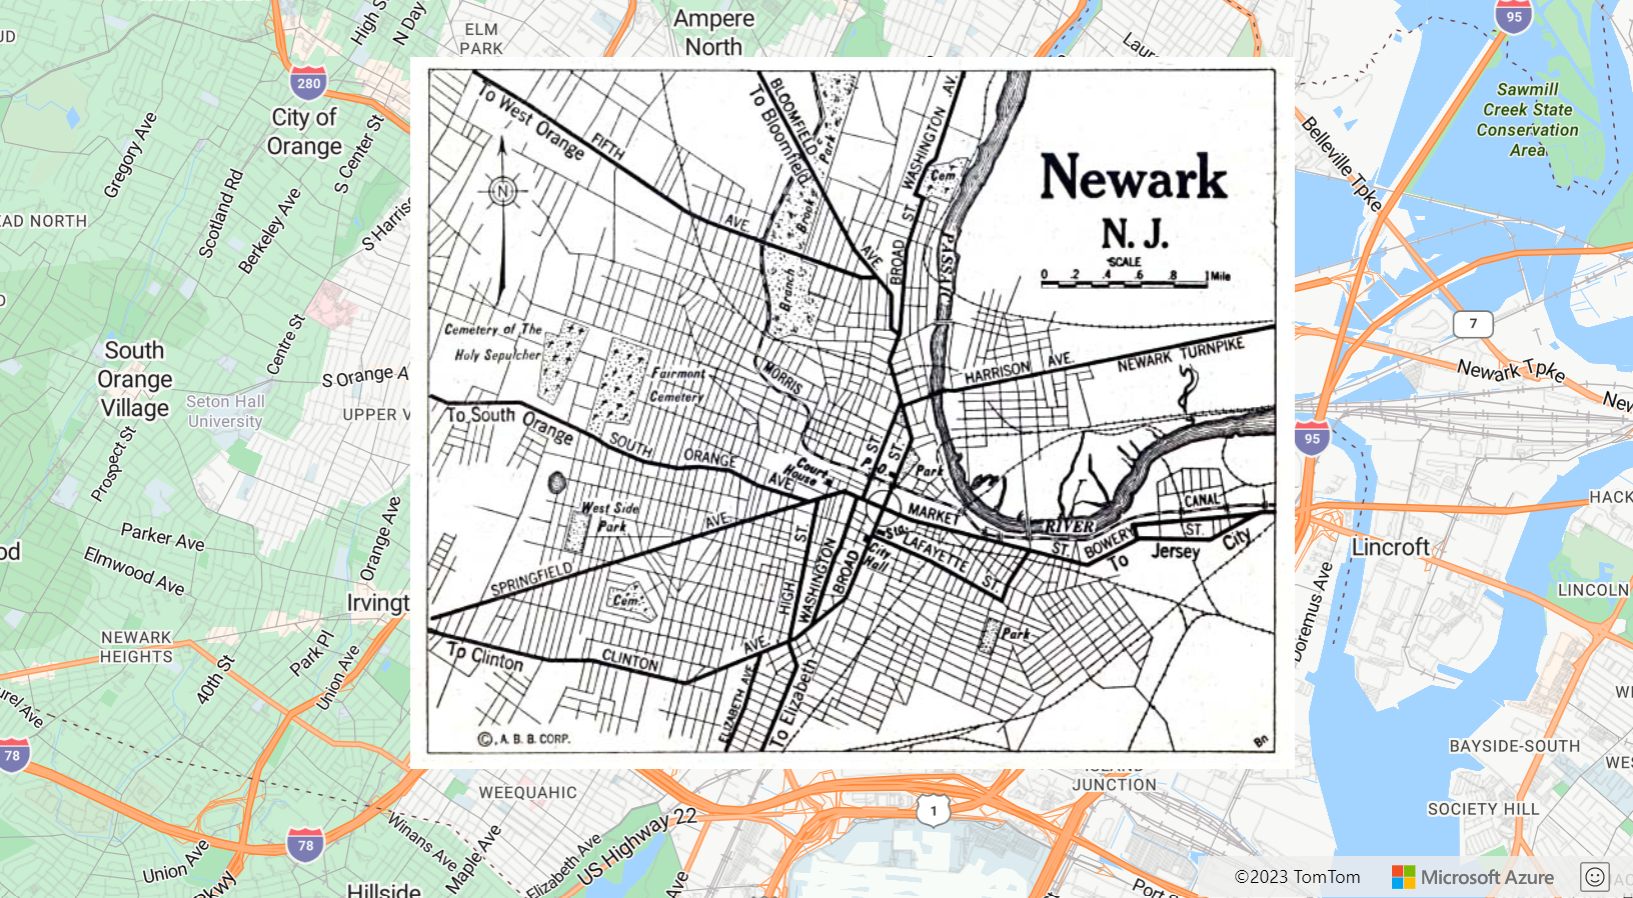 屏幕截图显示了一份地图，该地图以 1922 年新泽西州纽瓦克地图图像作为图像图层。